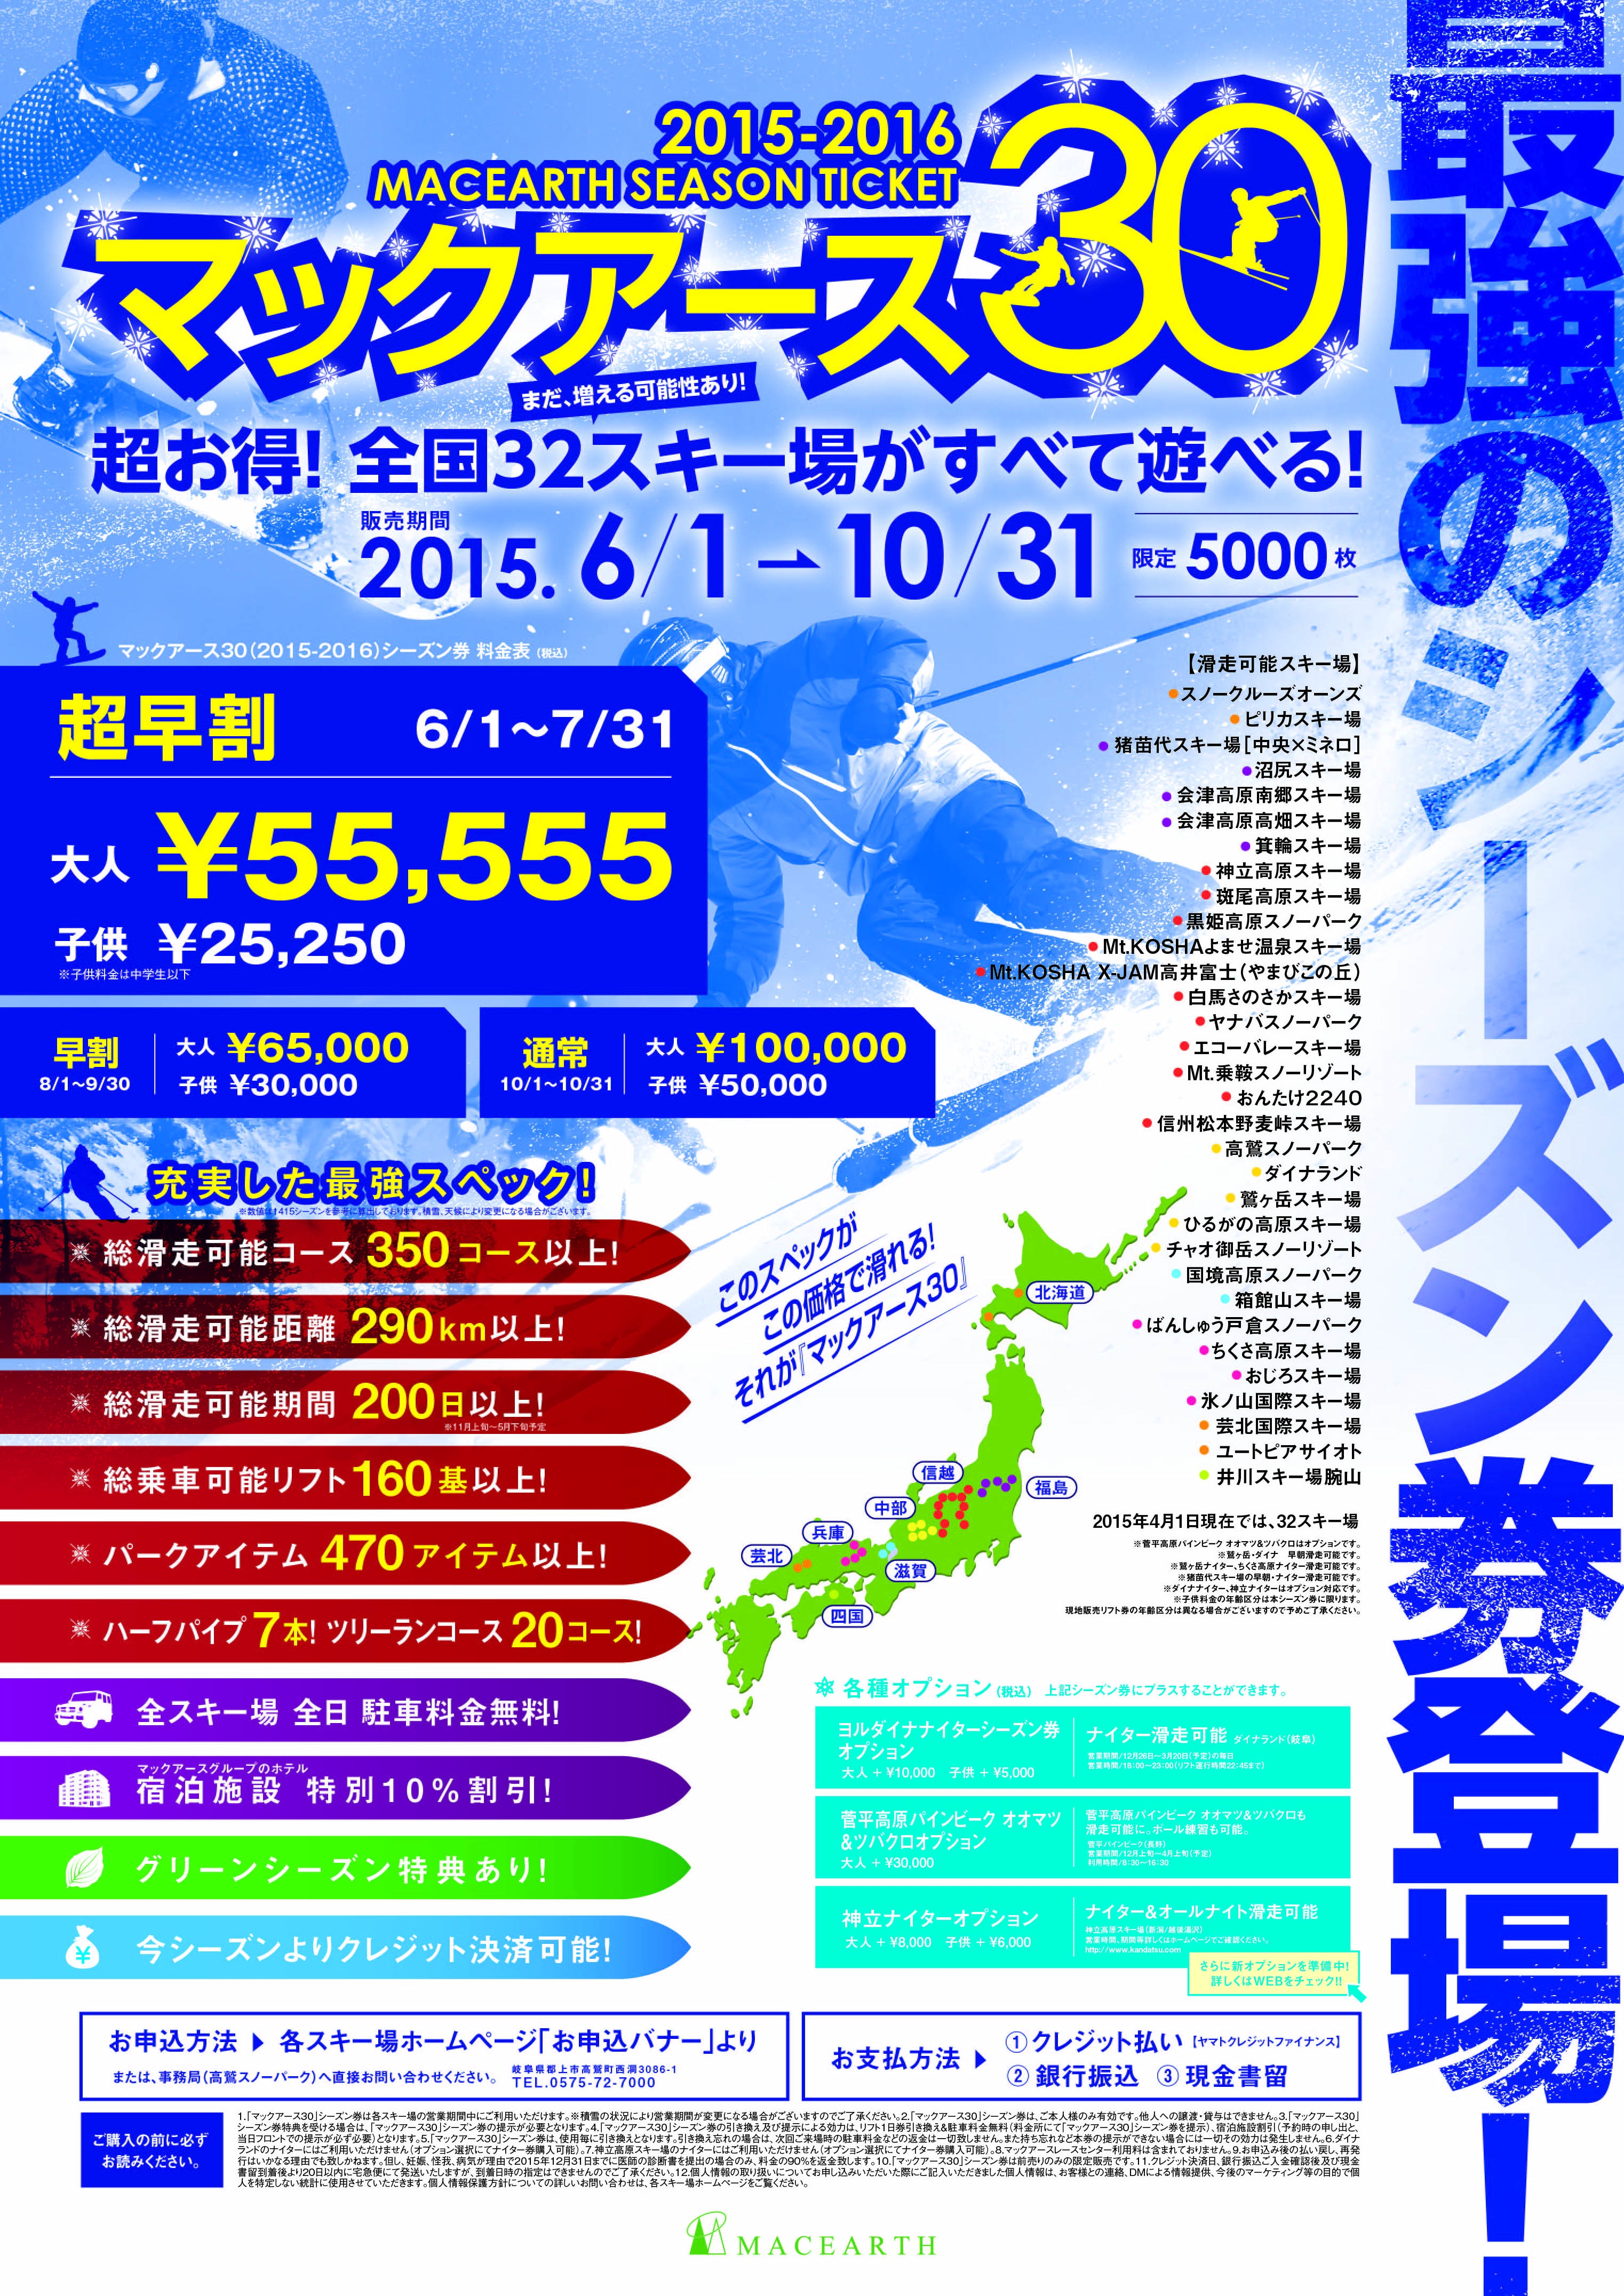 日本最大数のスキー場運営会社マックアース】 全国32スキー場で滑れる